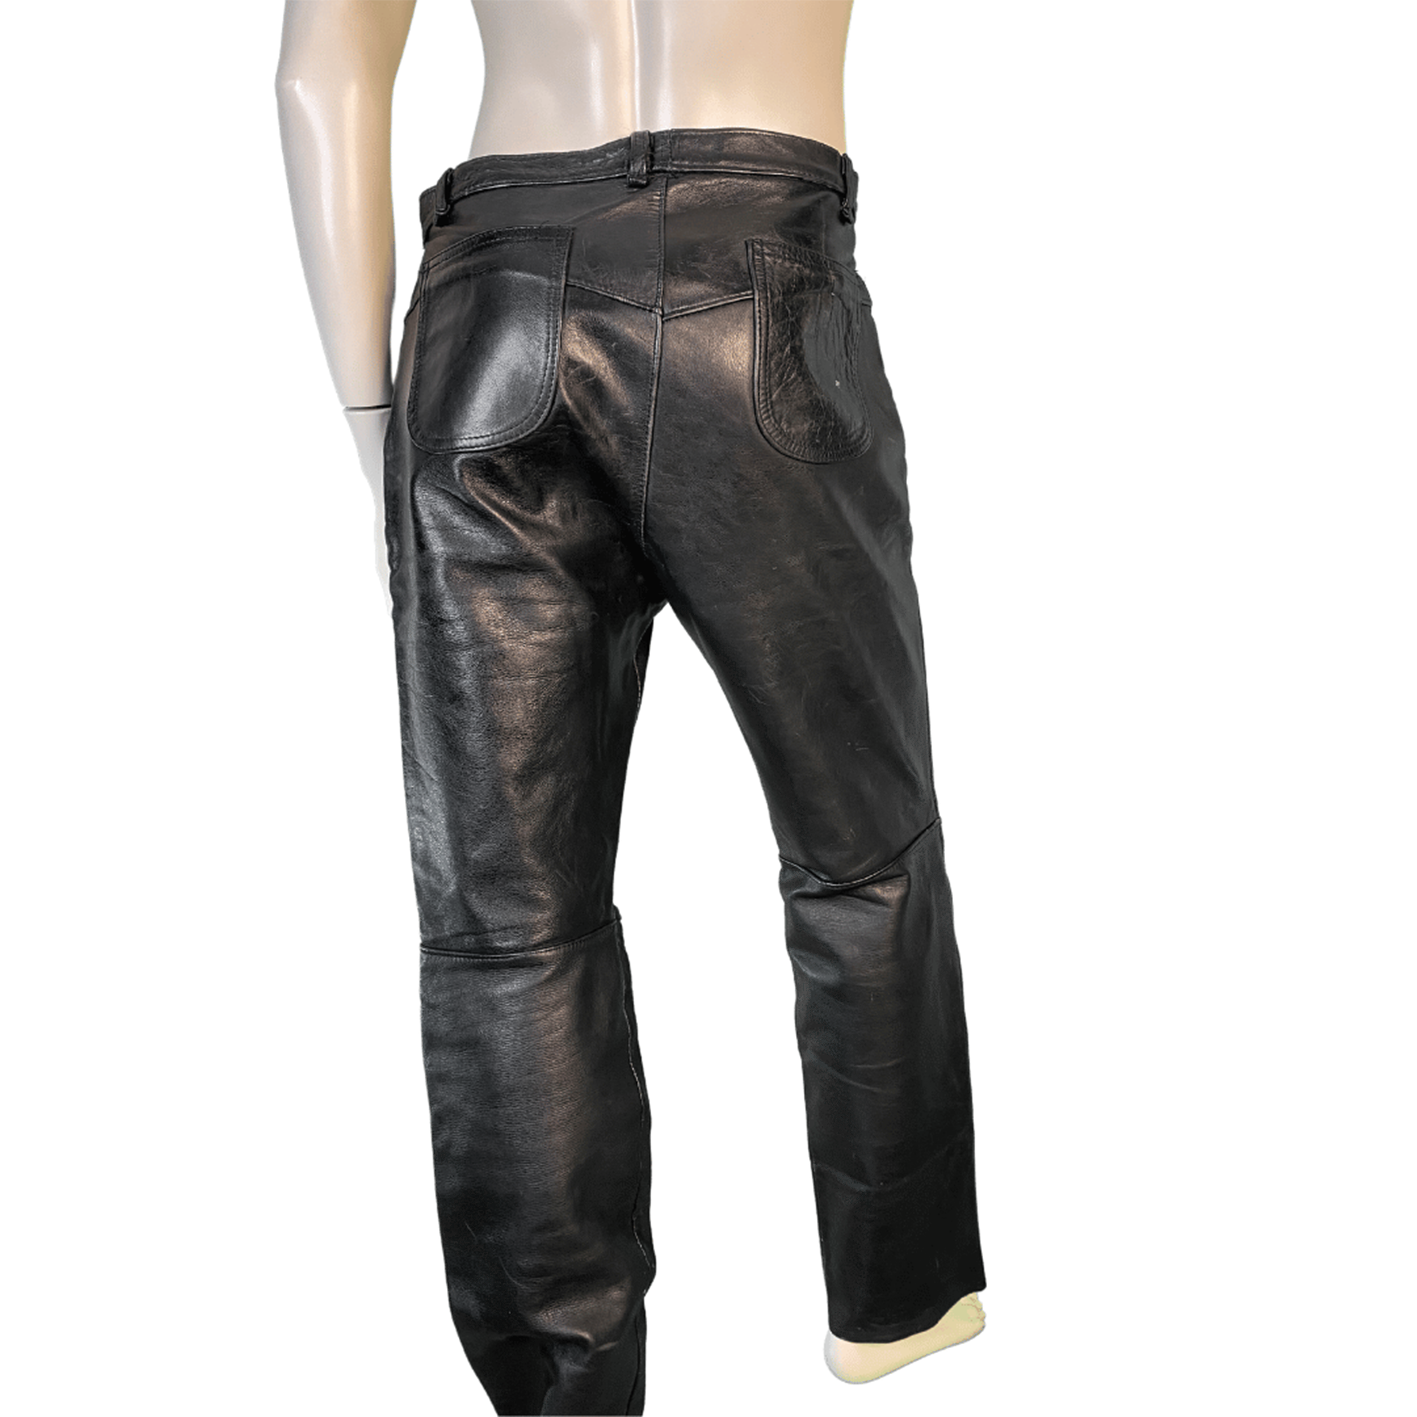 TT LEATHERS Vintage Motorbike Leather Jeans